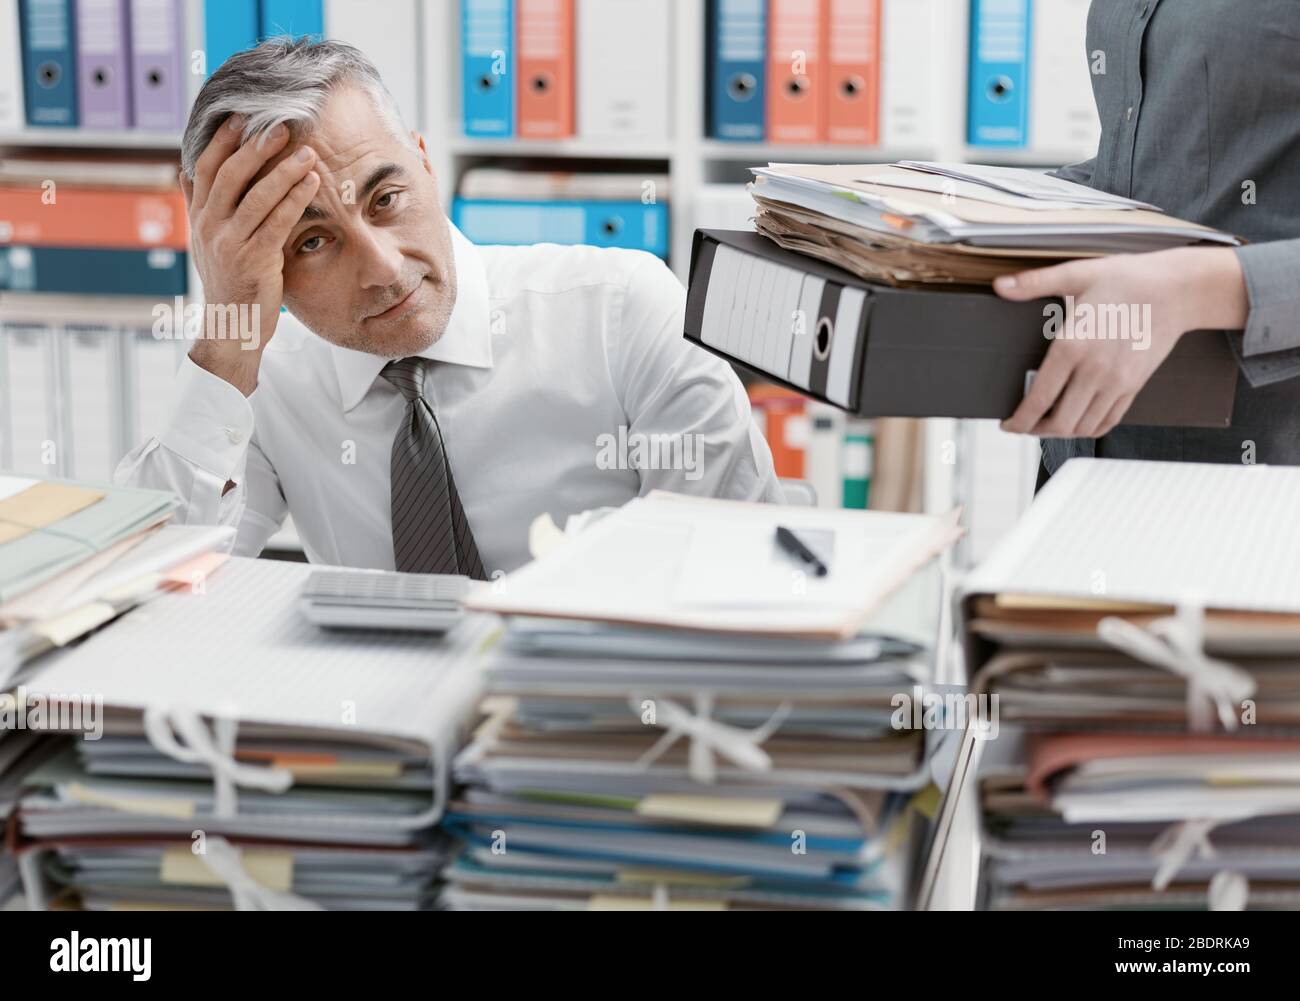 Betonte Geschäftsmann im Büro Schreibtisch arbeiten und mit Arbeit überlastet, der Desktop mit Papierkram abgedeckt ist, seine Sekretärin bringt mehr Dateien Stockfoto